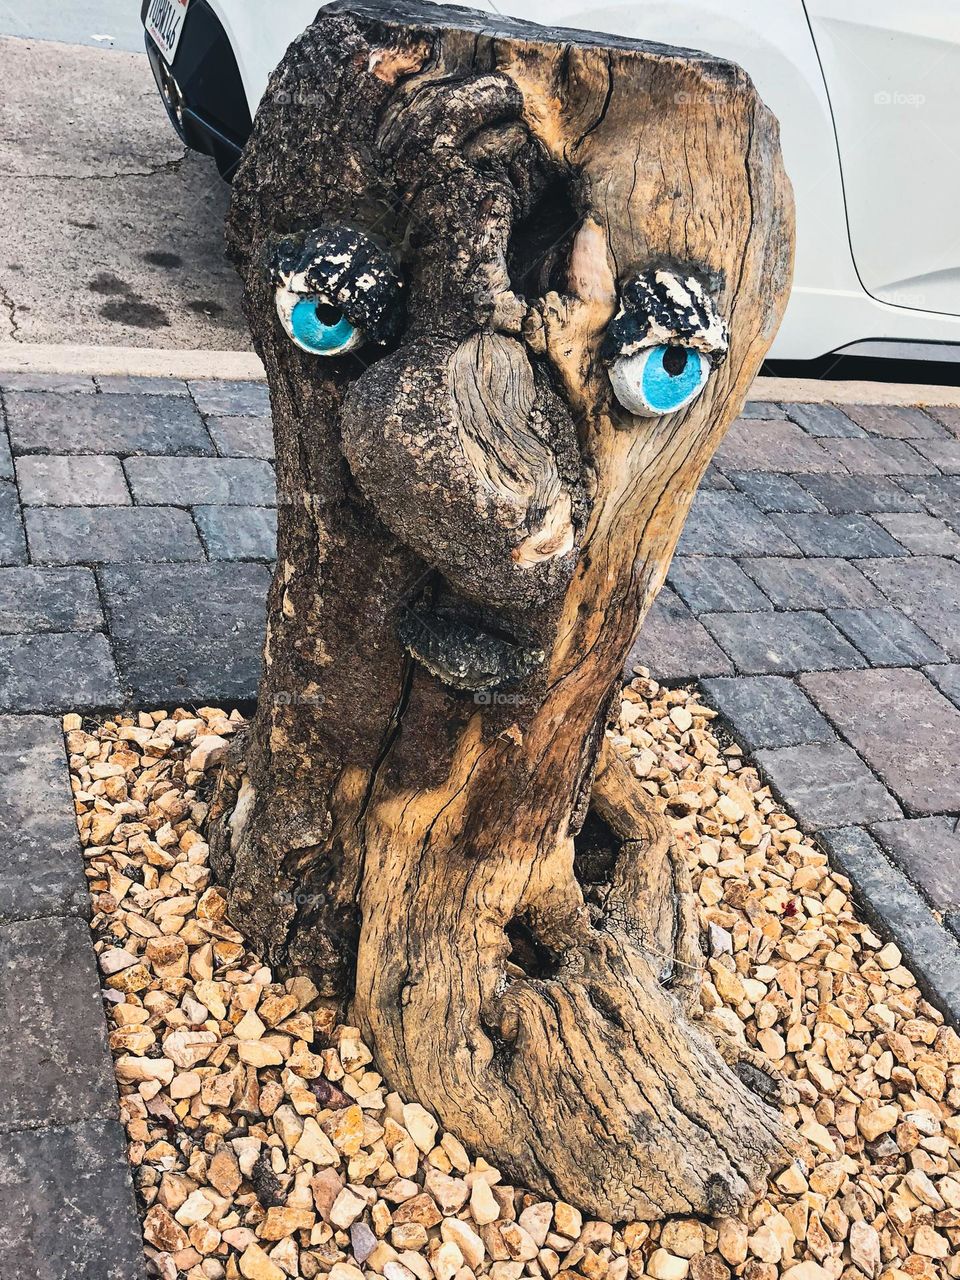 lil’ grumpy sidewalk stump